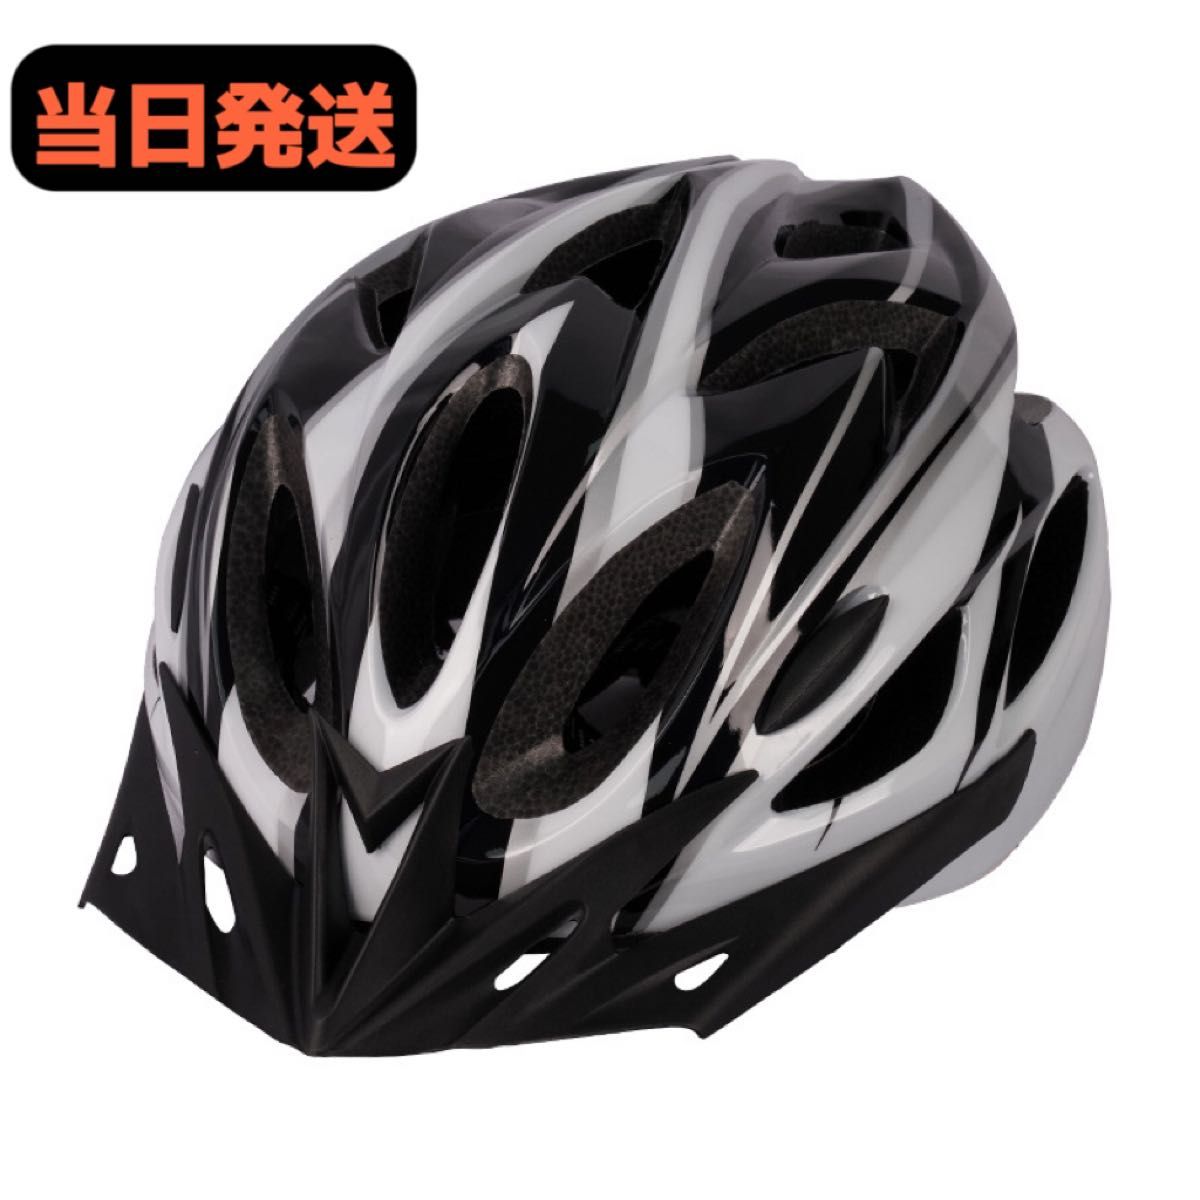 新品 ヘルメット 自転車用 大人用 高通気性 通学通勤 男女兼用 54-62cm ブラックxホワイト